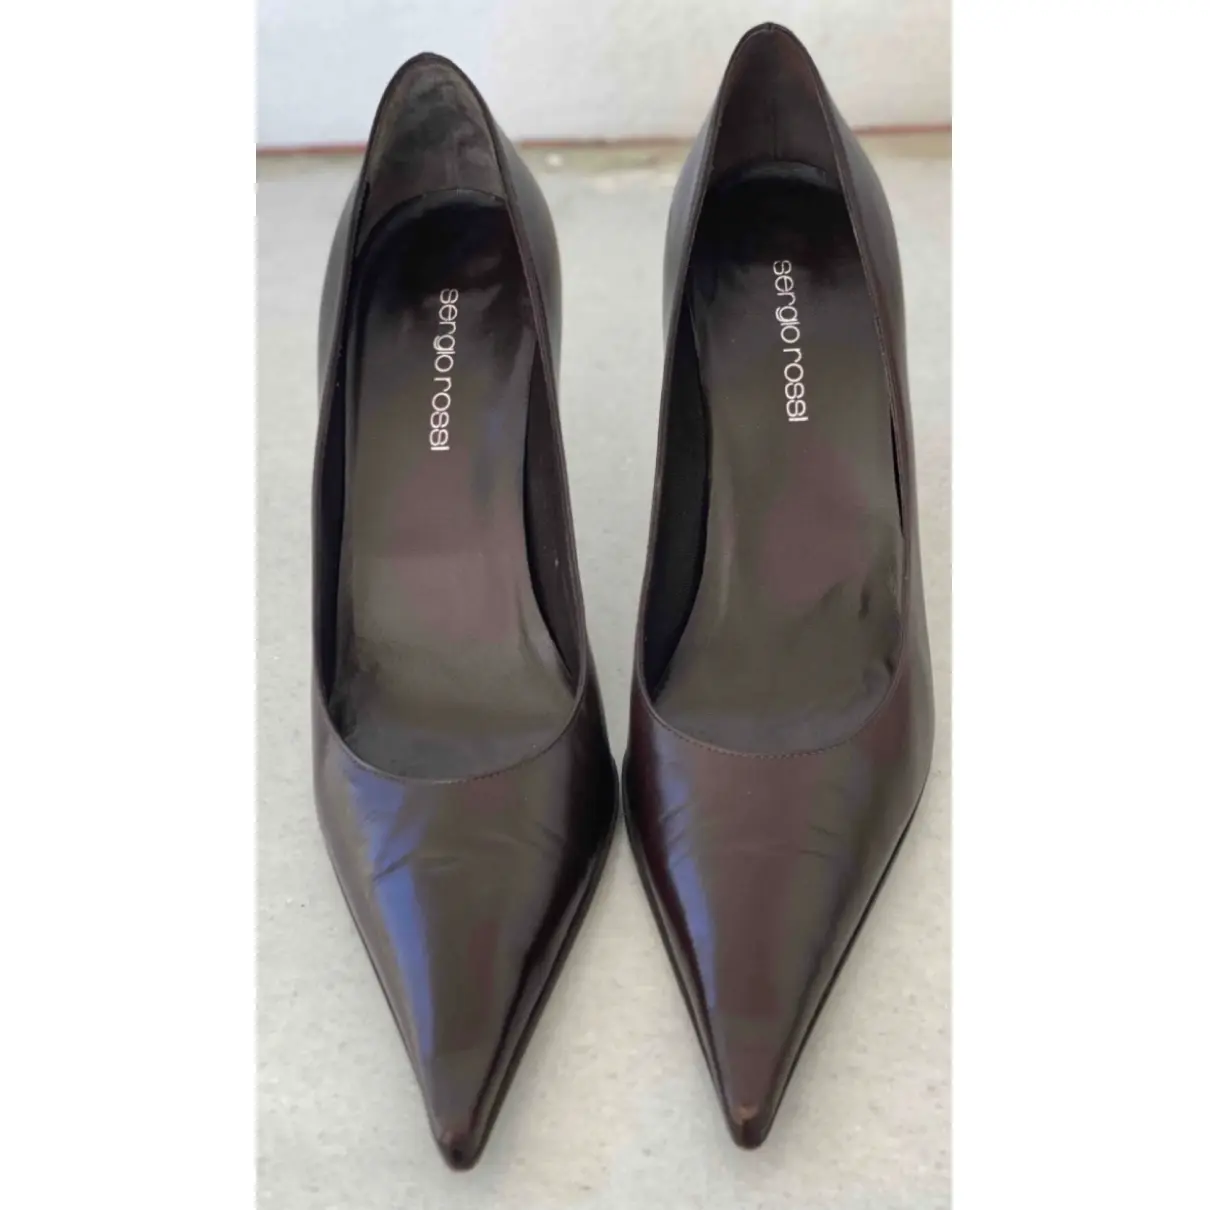 Buy Sergio Rossi Leather heels online - Vintage